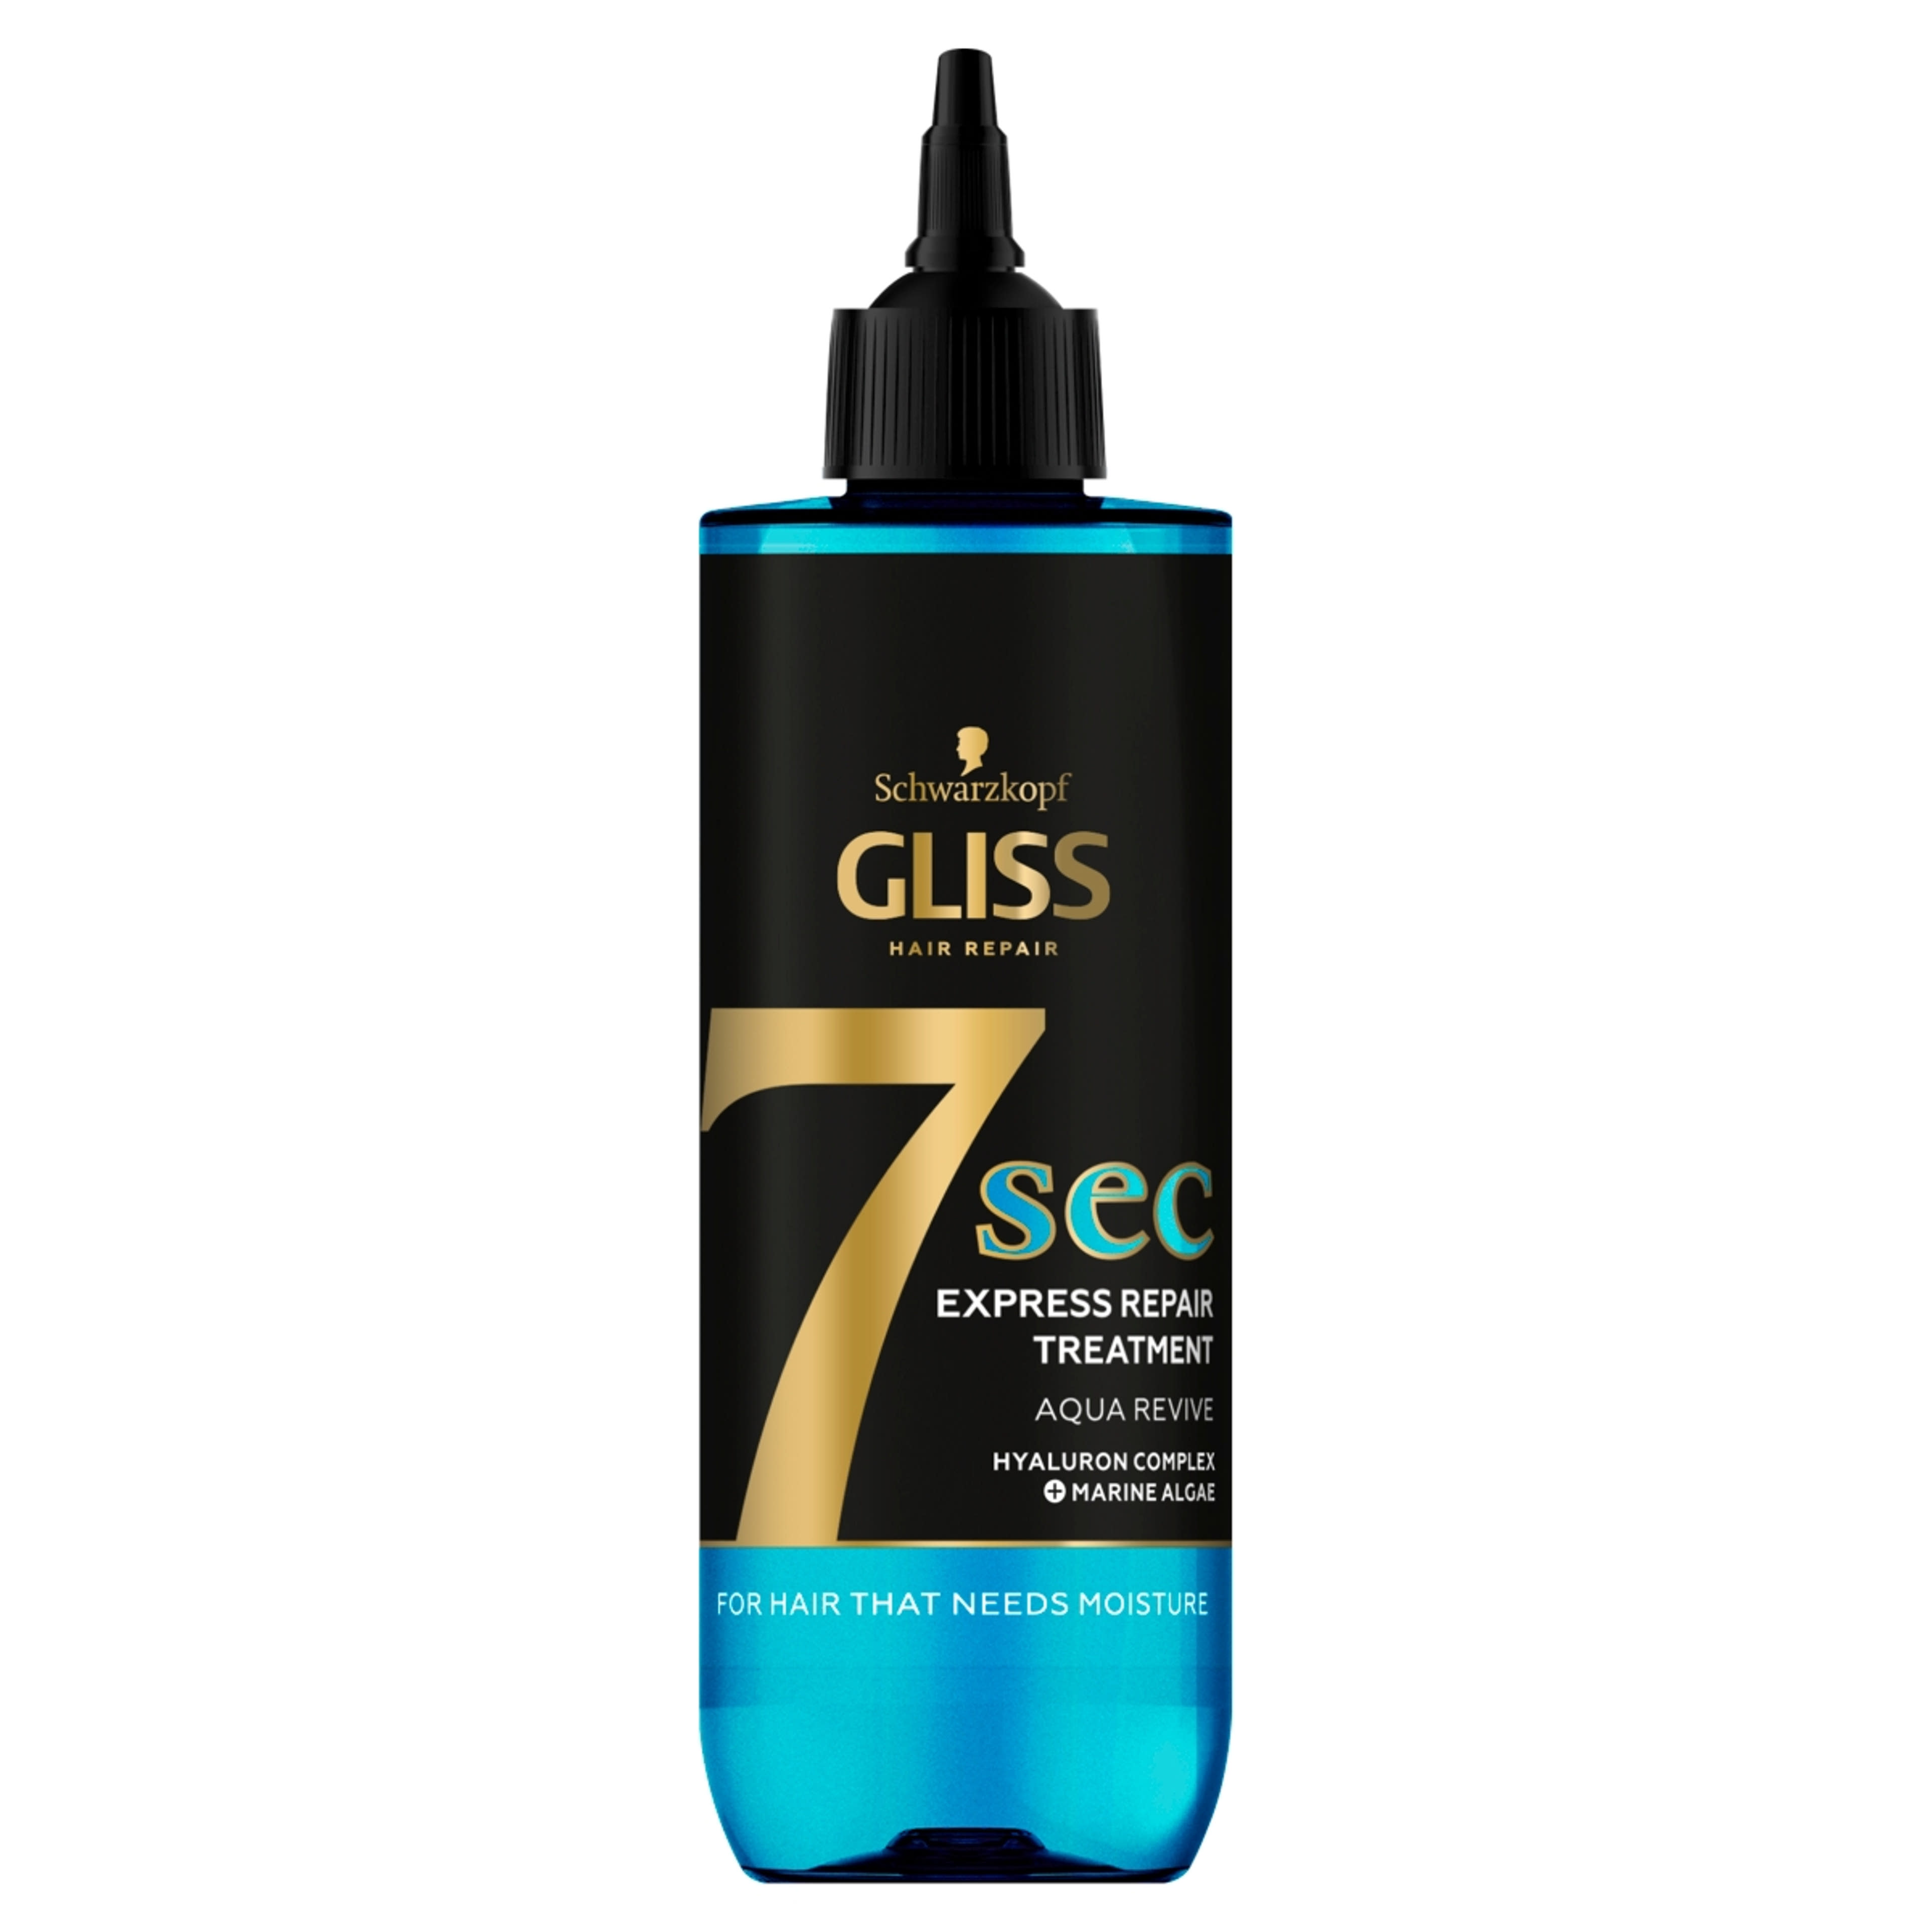 Gliss 7seconds Express Repair Aqua Revive hajpakolás - 200 ml-1